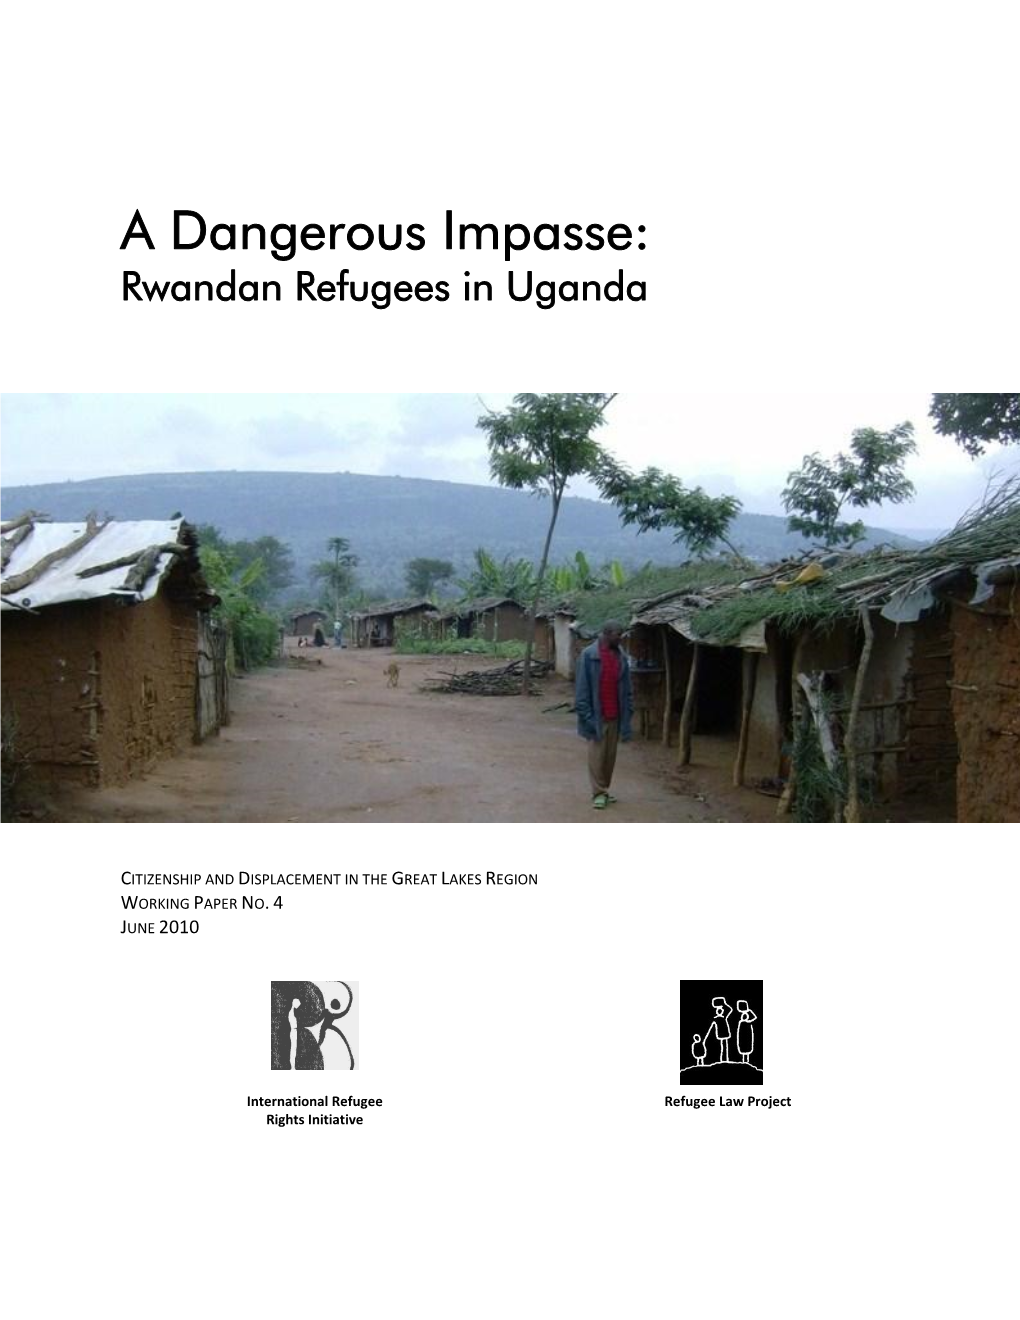 A Dangerous Impasse: Rwandan Refugees in Uganda